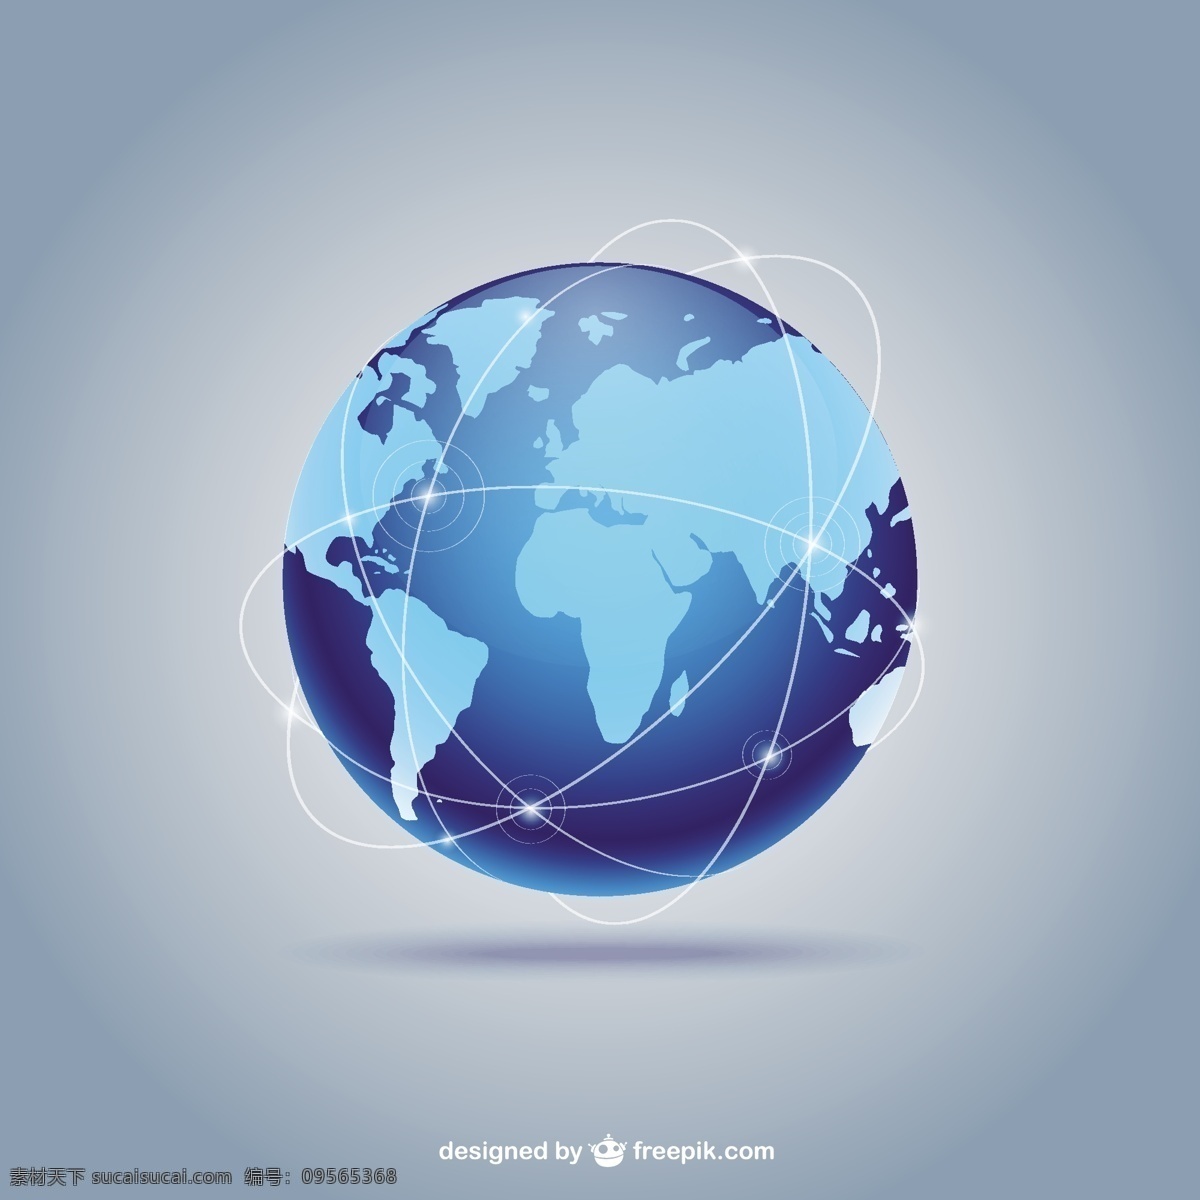 蓝色地球背景 地图 世界 地球 蓝色 全球 行星 国际 古代 矢量 eps文件